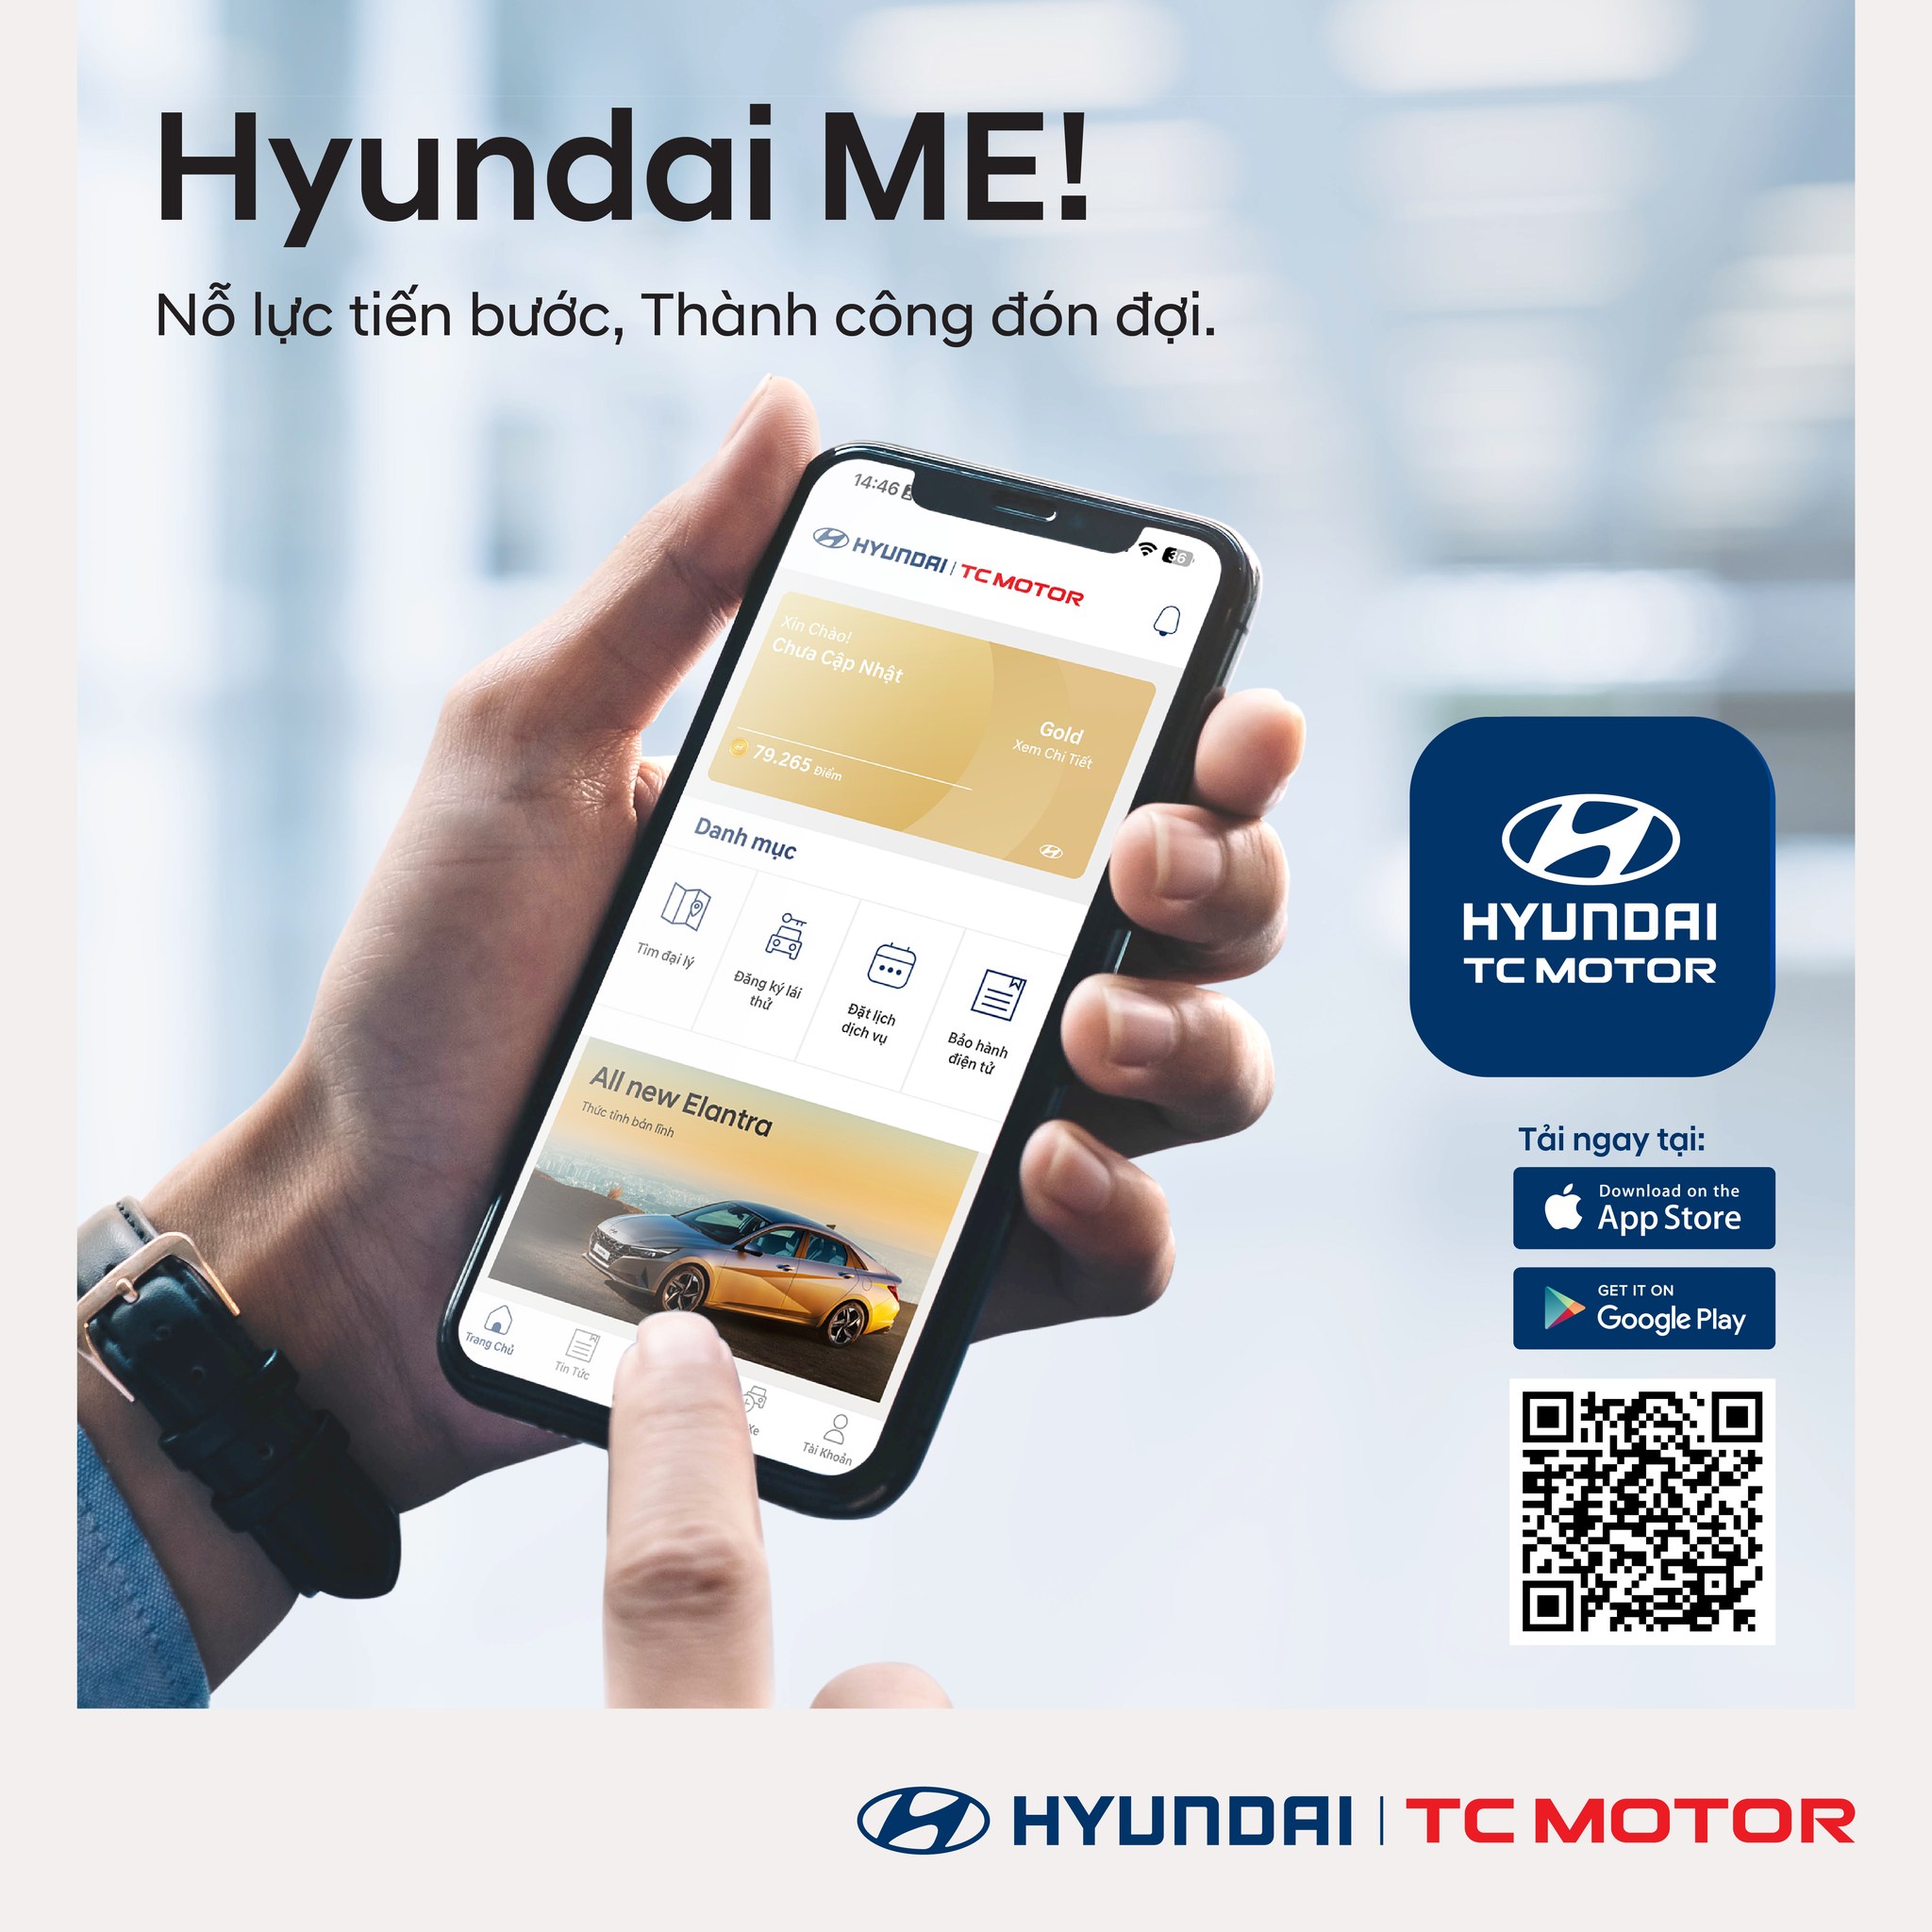 Hyundai Thành Công chính thức cập nhật ứng dụng  Hyundai ME!